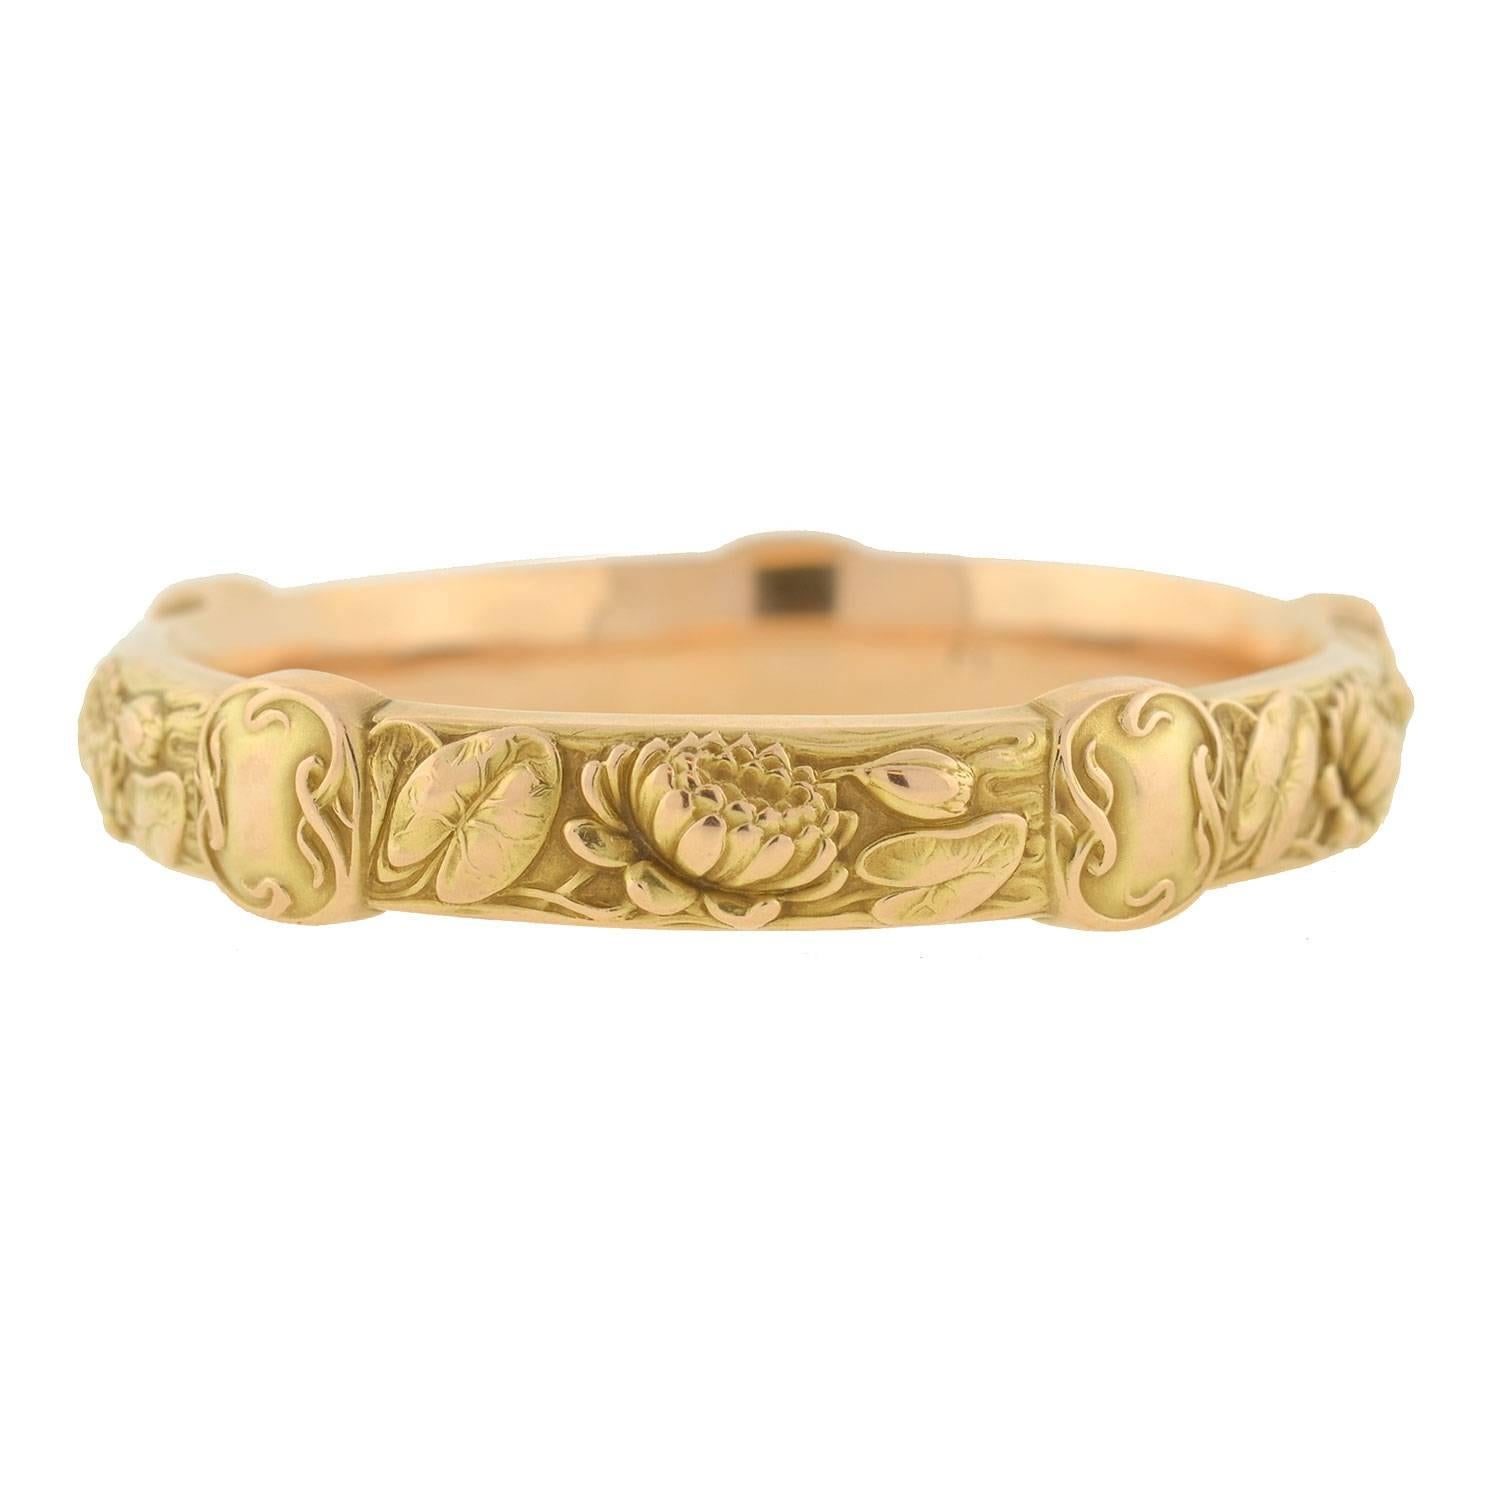 Riker Brothers Art Nouveau Gold Repousse Lily Pad Flower Bracelet